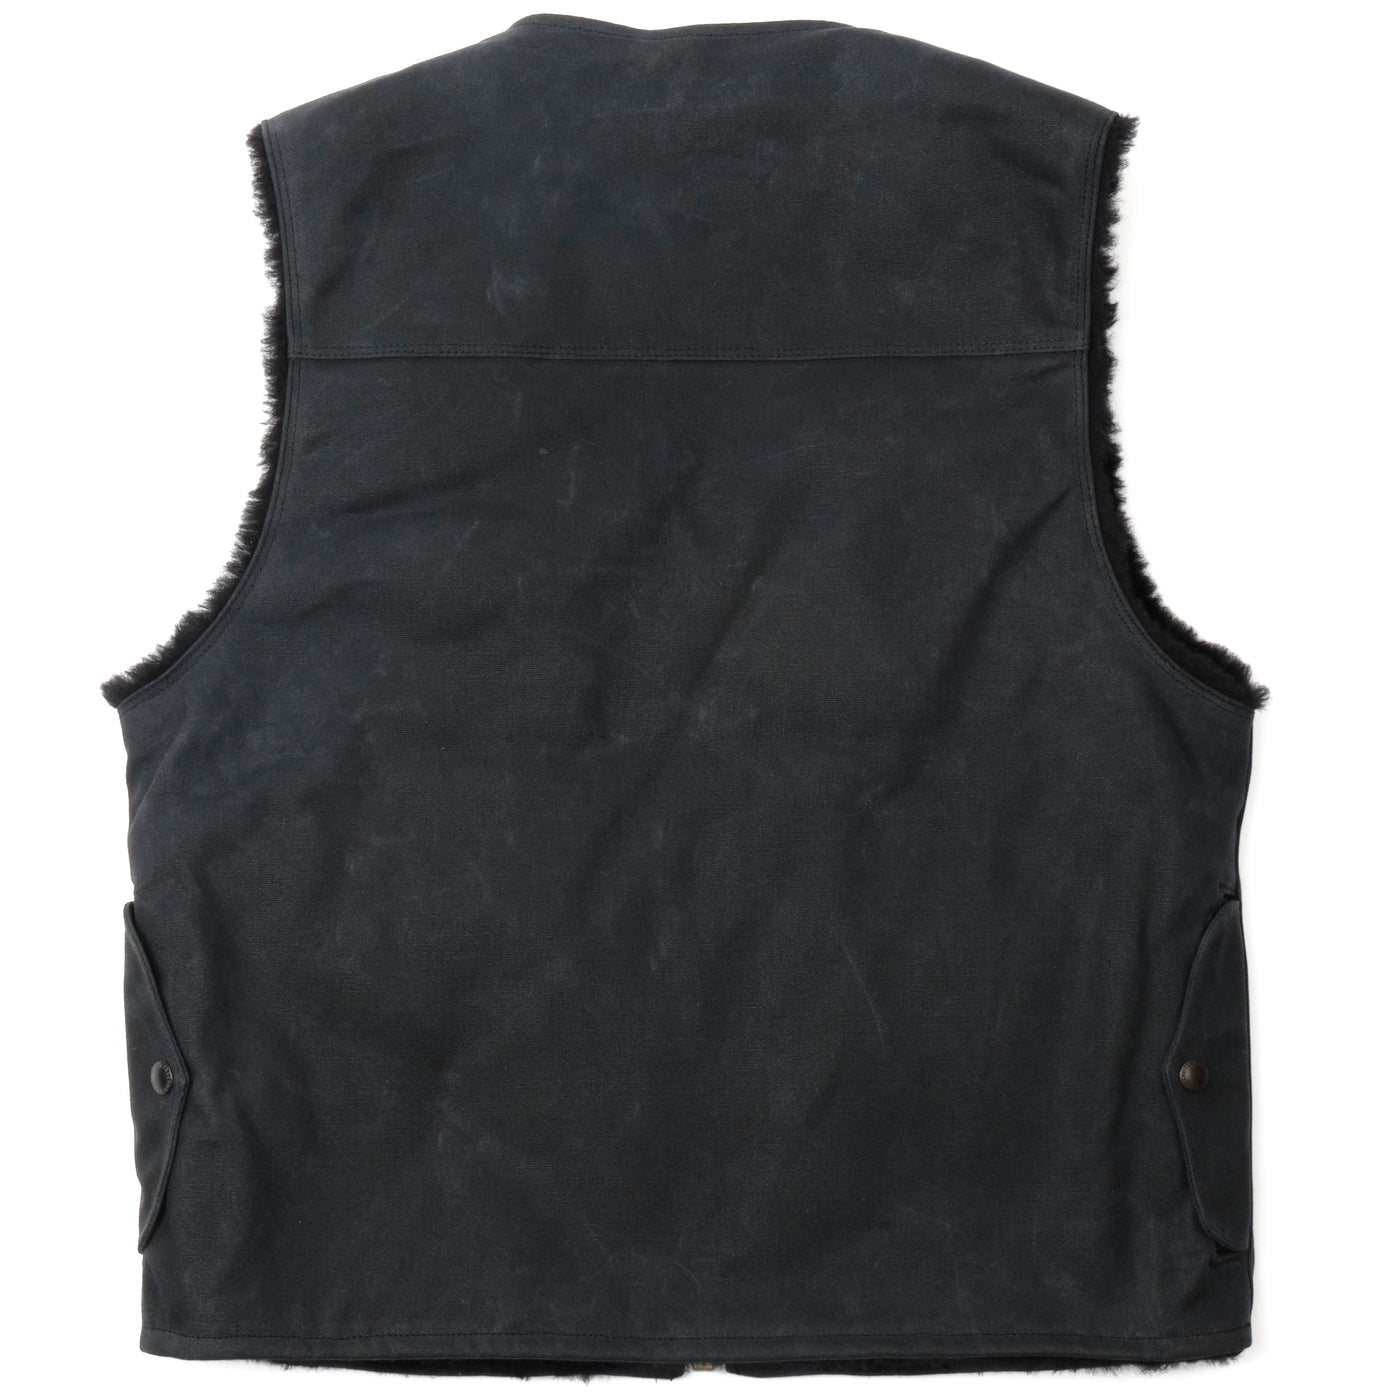 Teamster Vest in Black Wax